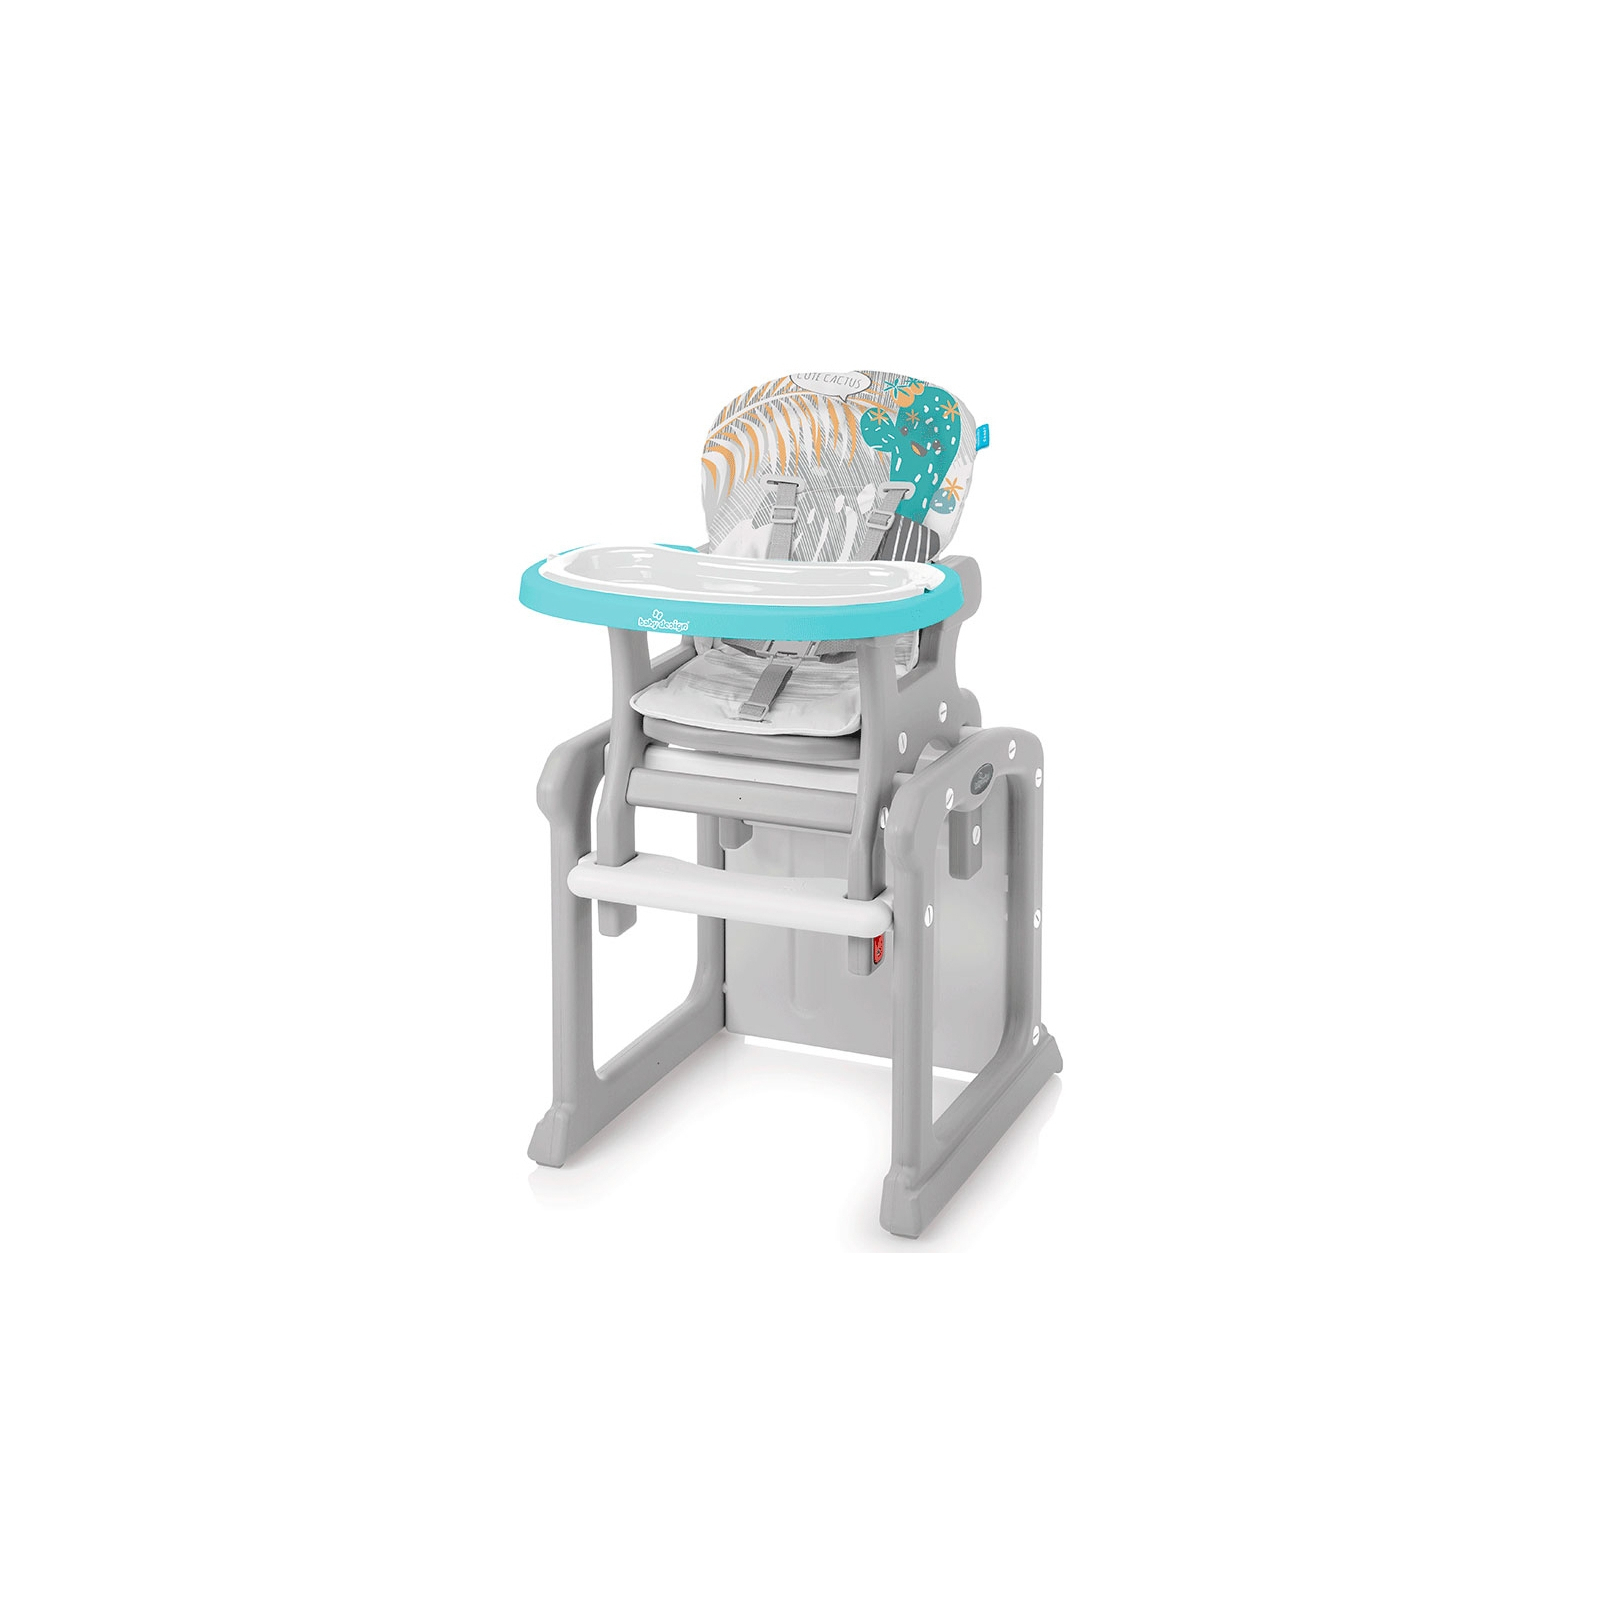 Стульчик для кормления Baby Design Candy 05 Turquoise (200014)